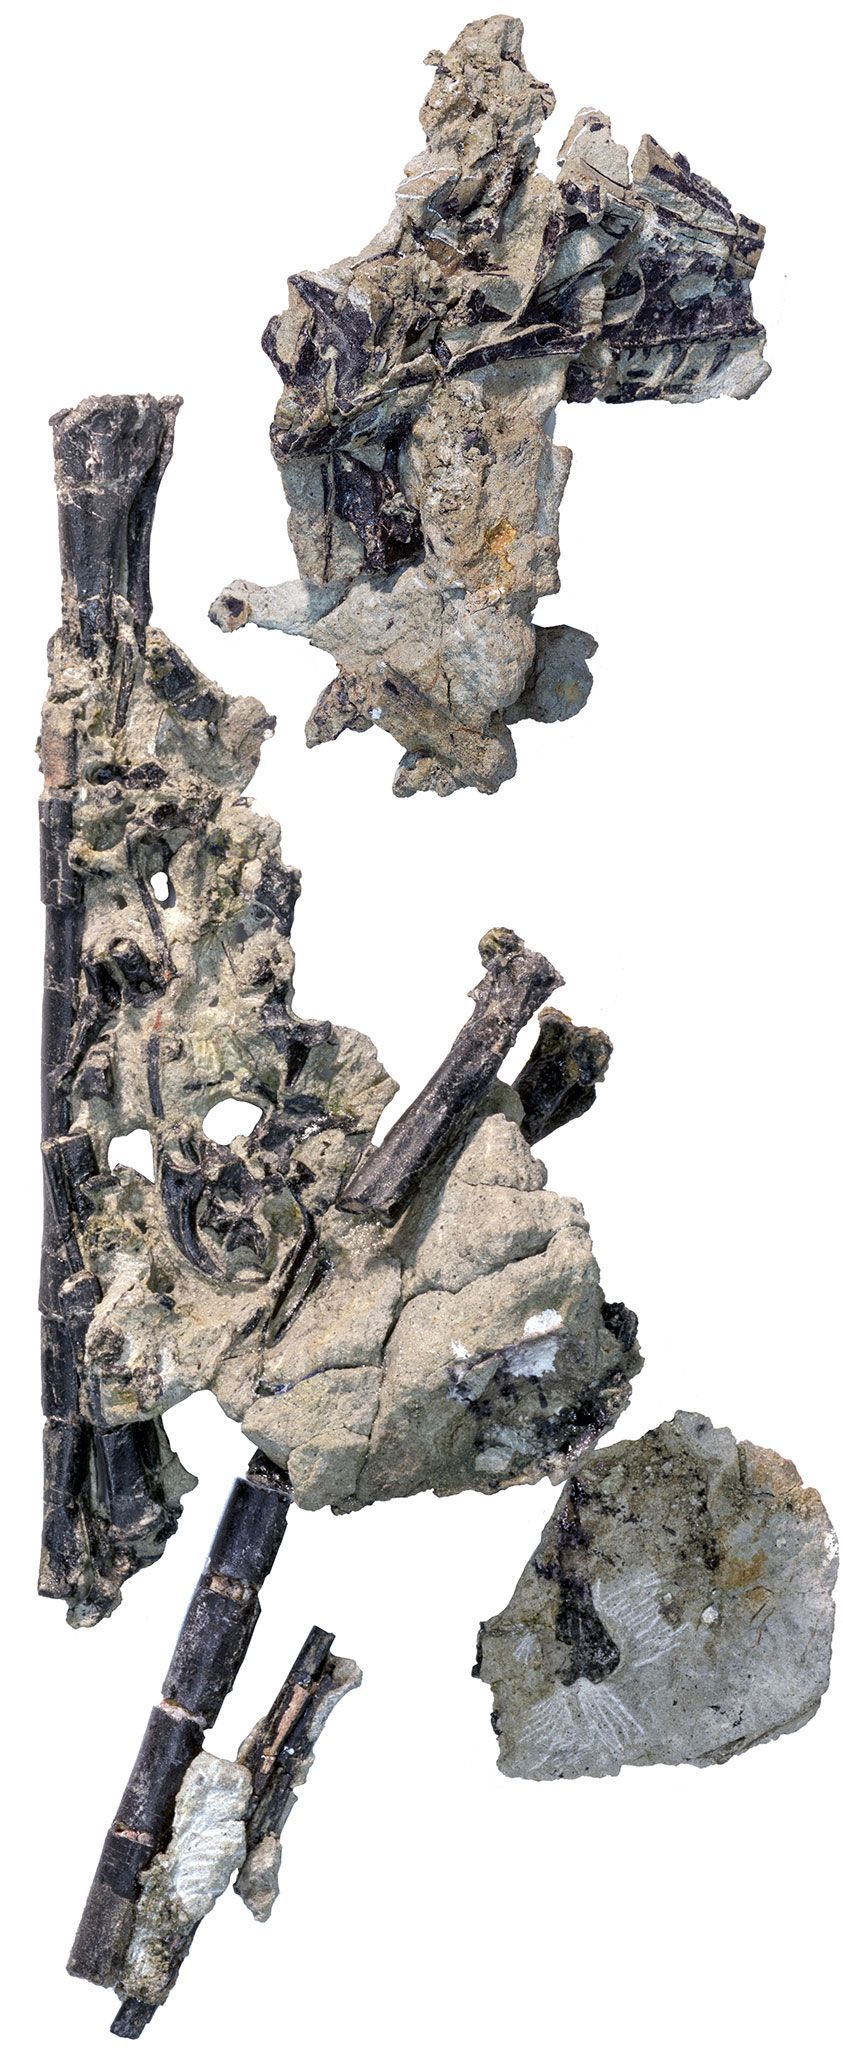 De fossielen van Lori behoren tot de soort Hesperornithoides miessleriis die tijdens het BovenJura leefde Het is de kleinste dinosaurir die tot nu toe in de staat Wyoming is ontdekt